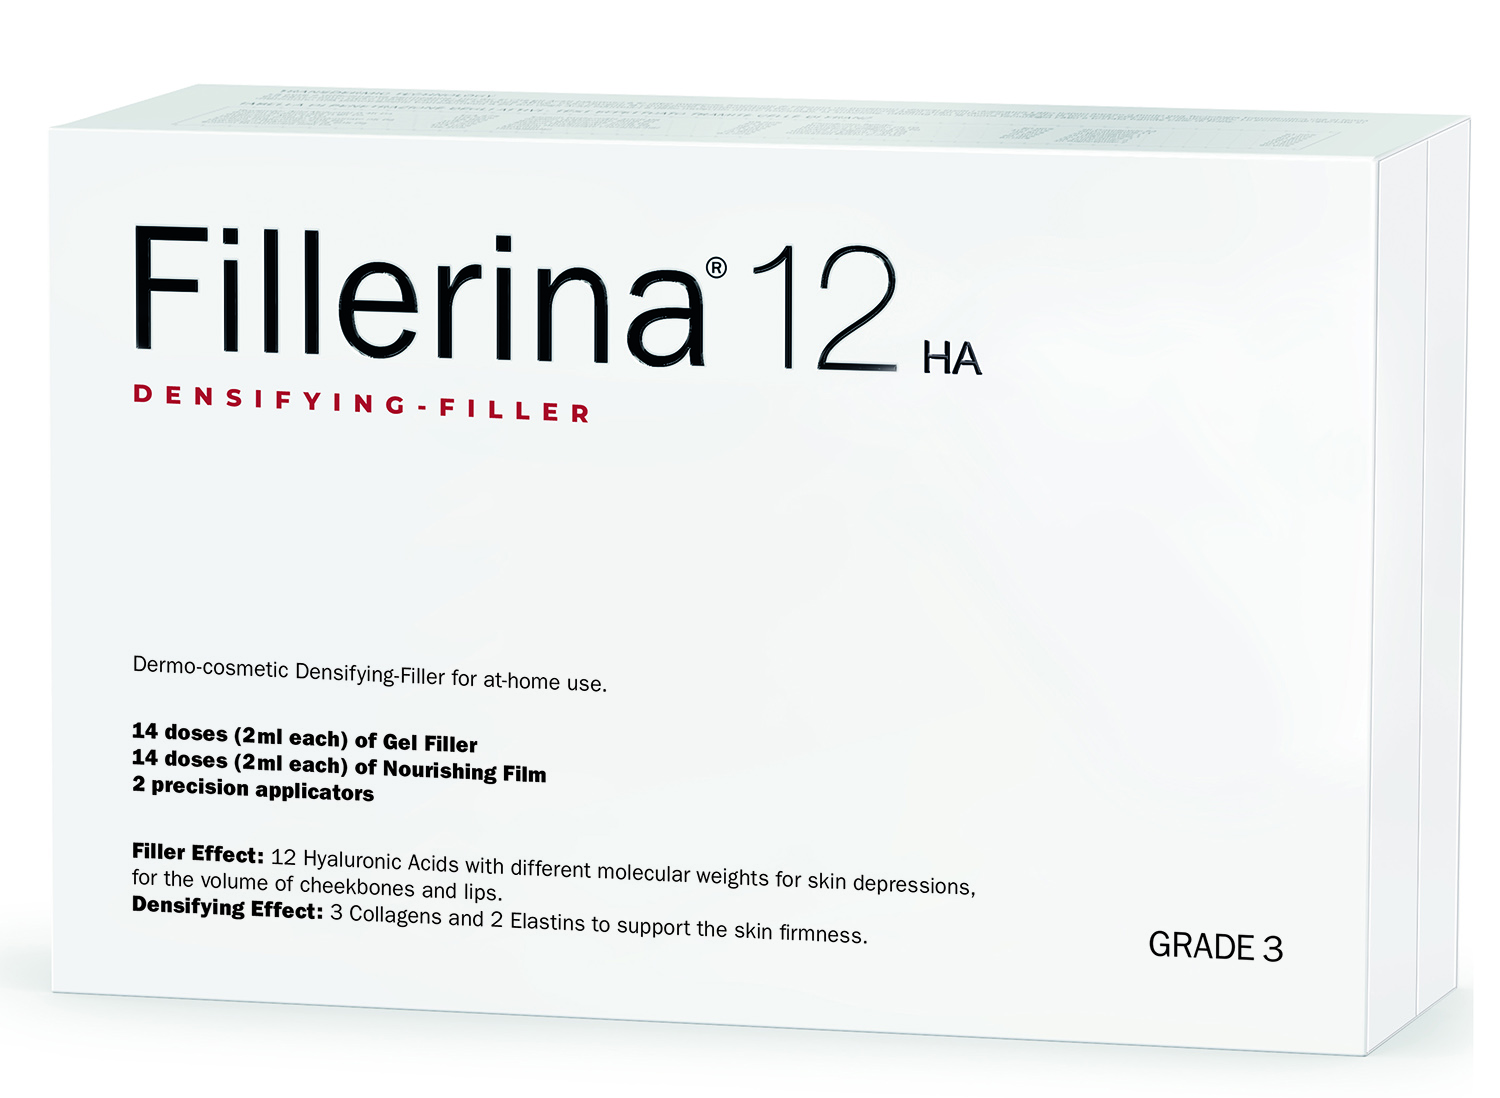 Fillerina Дермо-косметический набор с укрепляющим эффектом Intensive уровень 3, 2 флакона х 30 мл (Fillerina, 12 HA Densifying-Filler) fillerina филлер 12 ha косметический уровень 3 2 30 мл